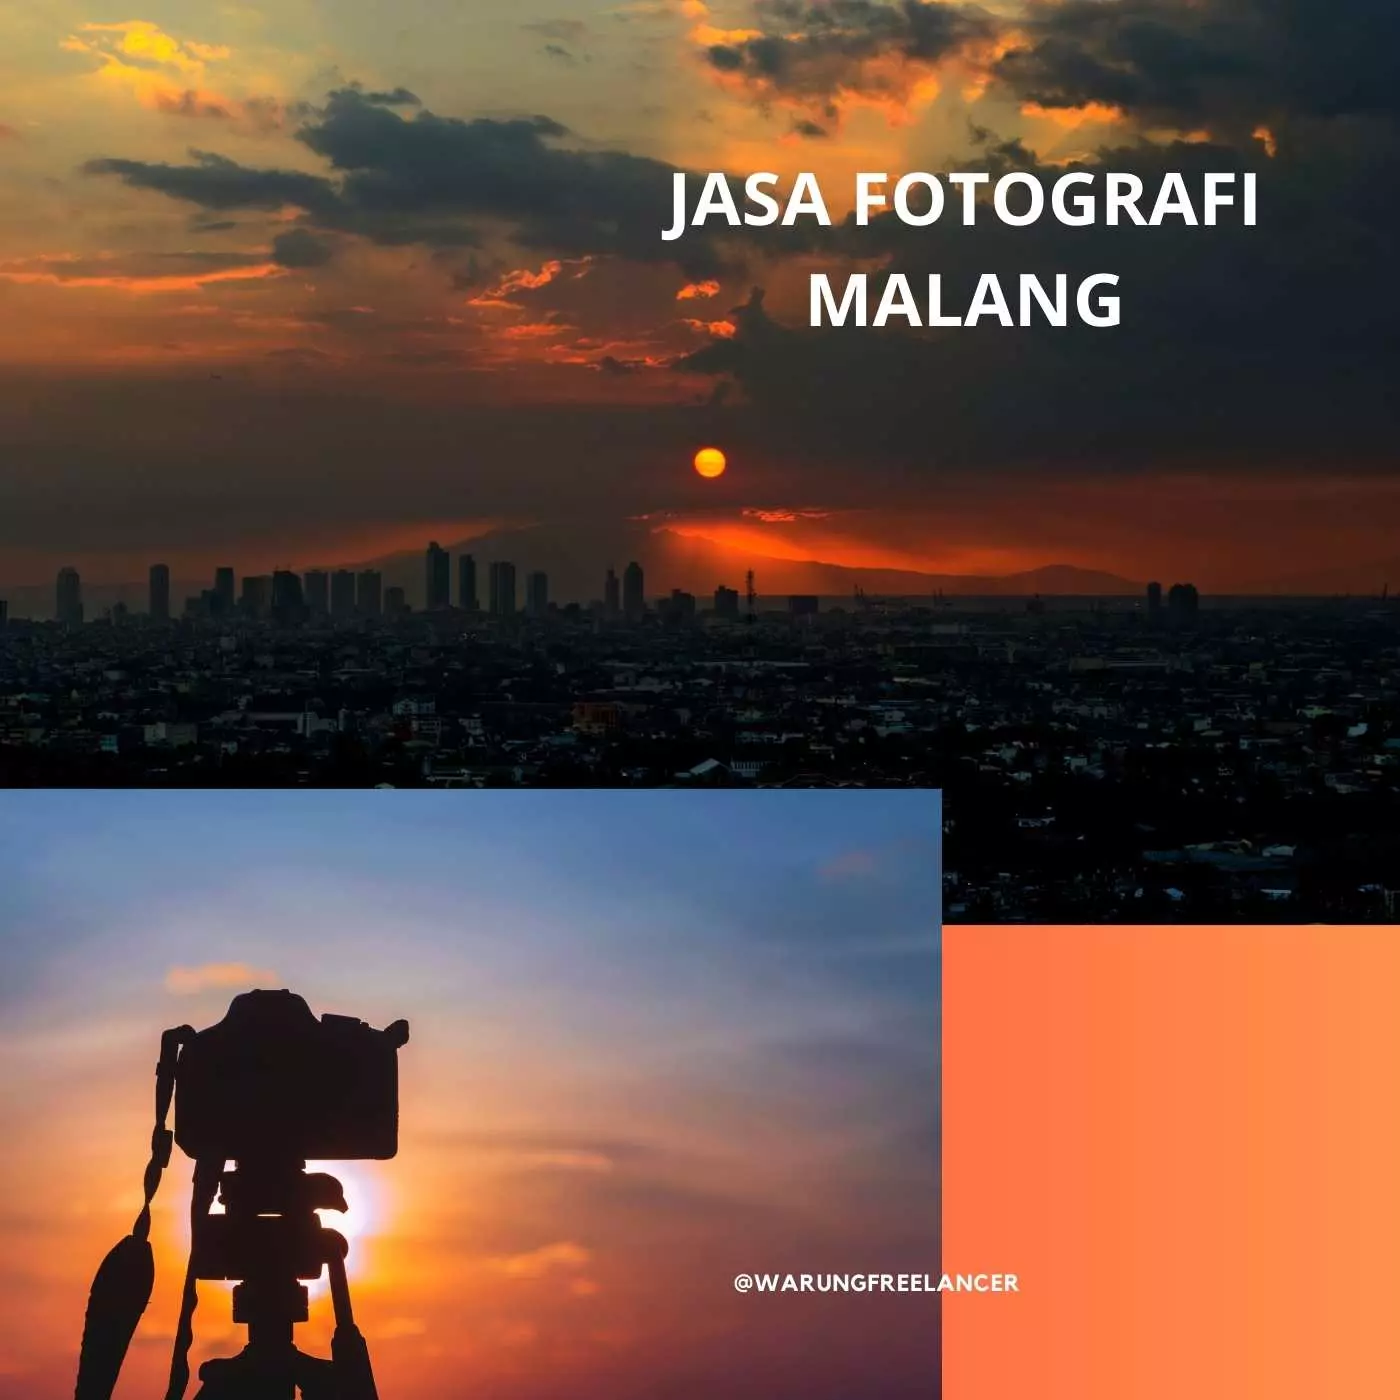 Jasa Fotografi di Malang